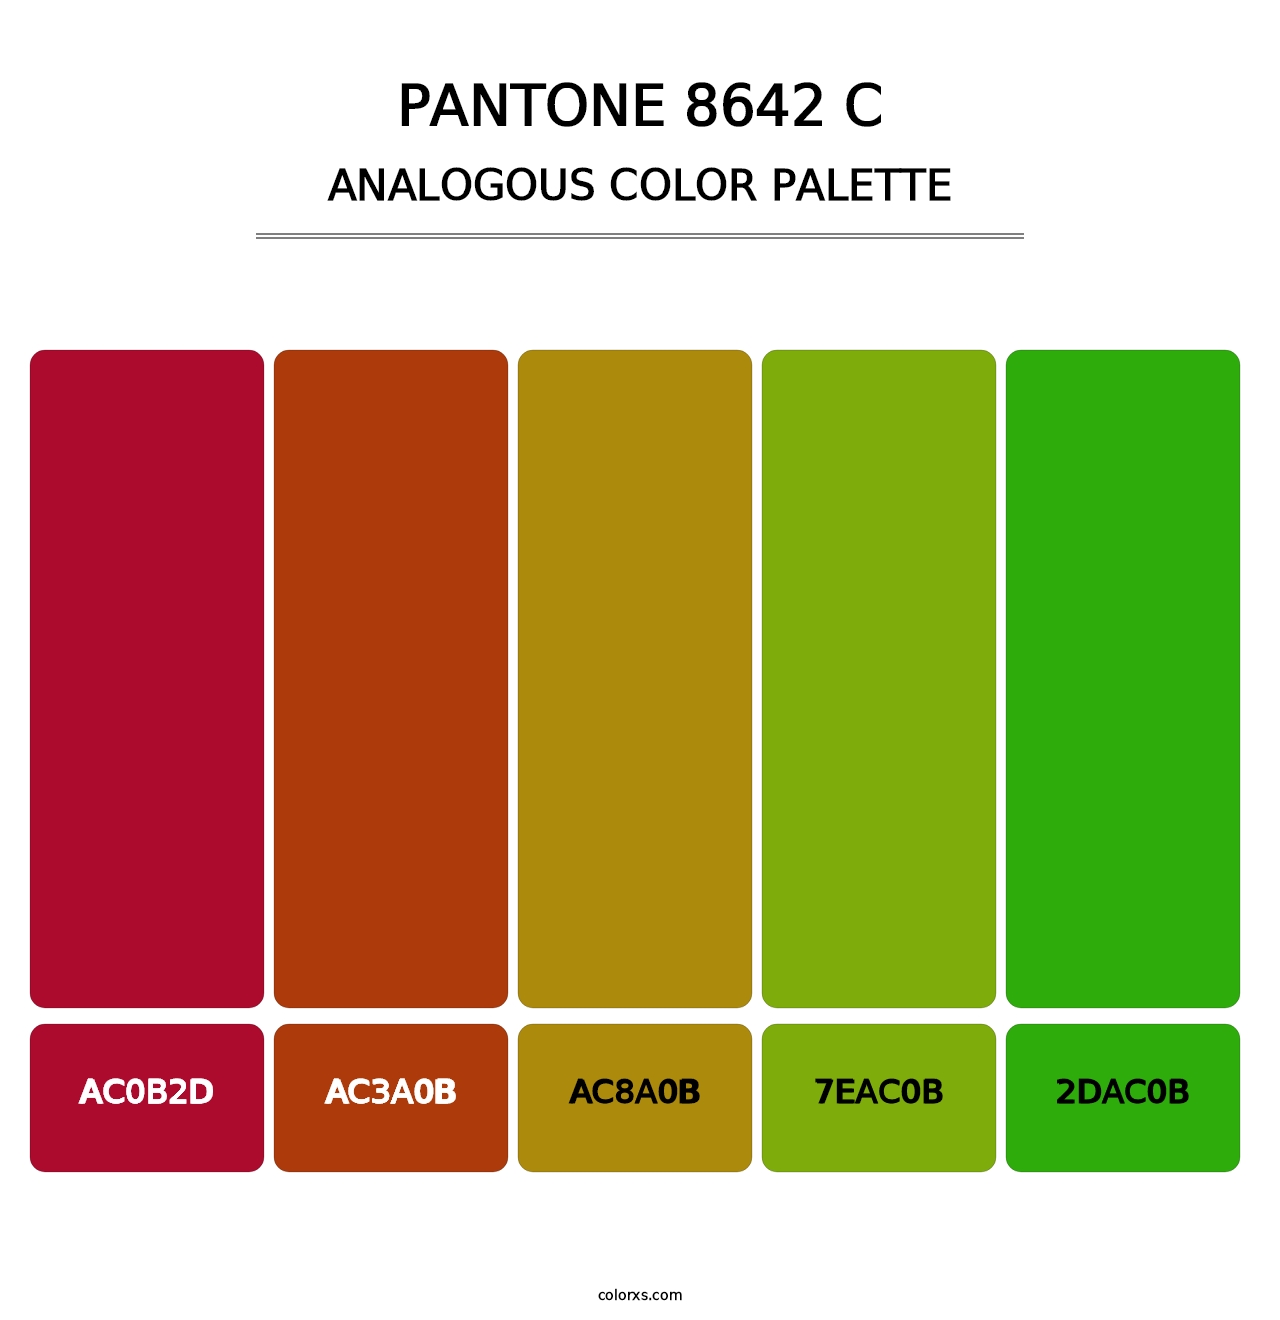 PANTONE 8642 C - Analogous Color Palette